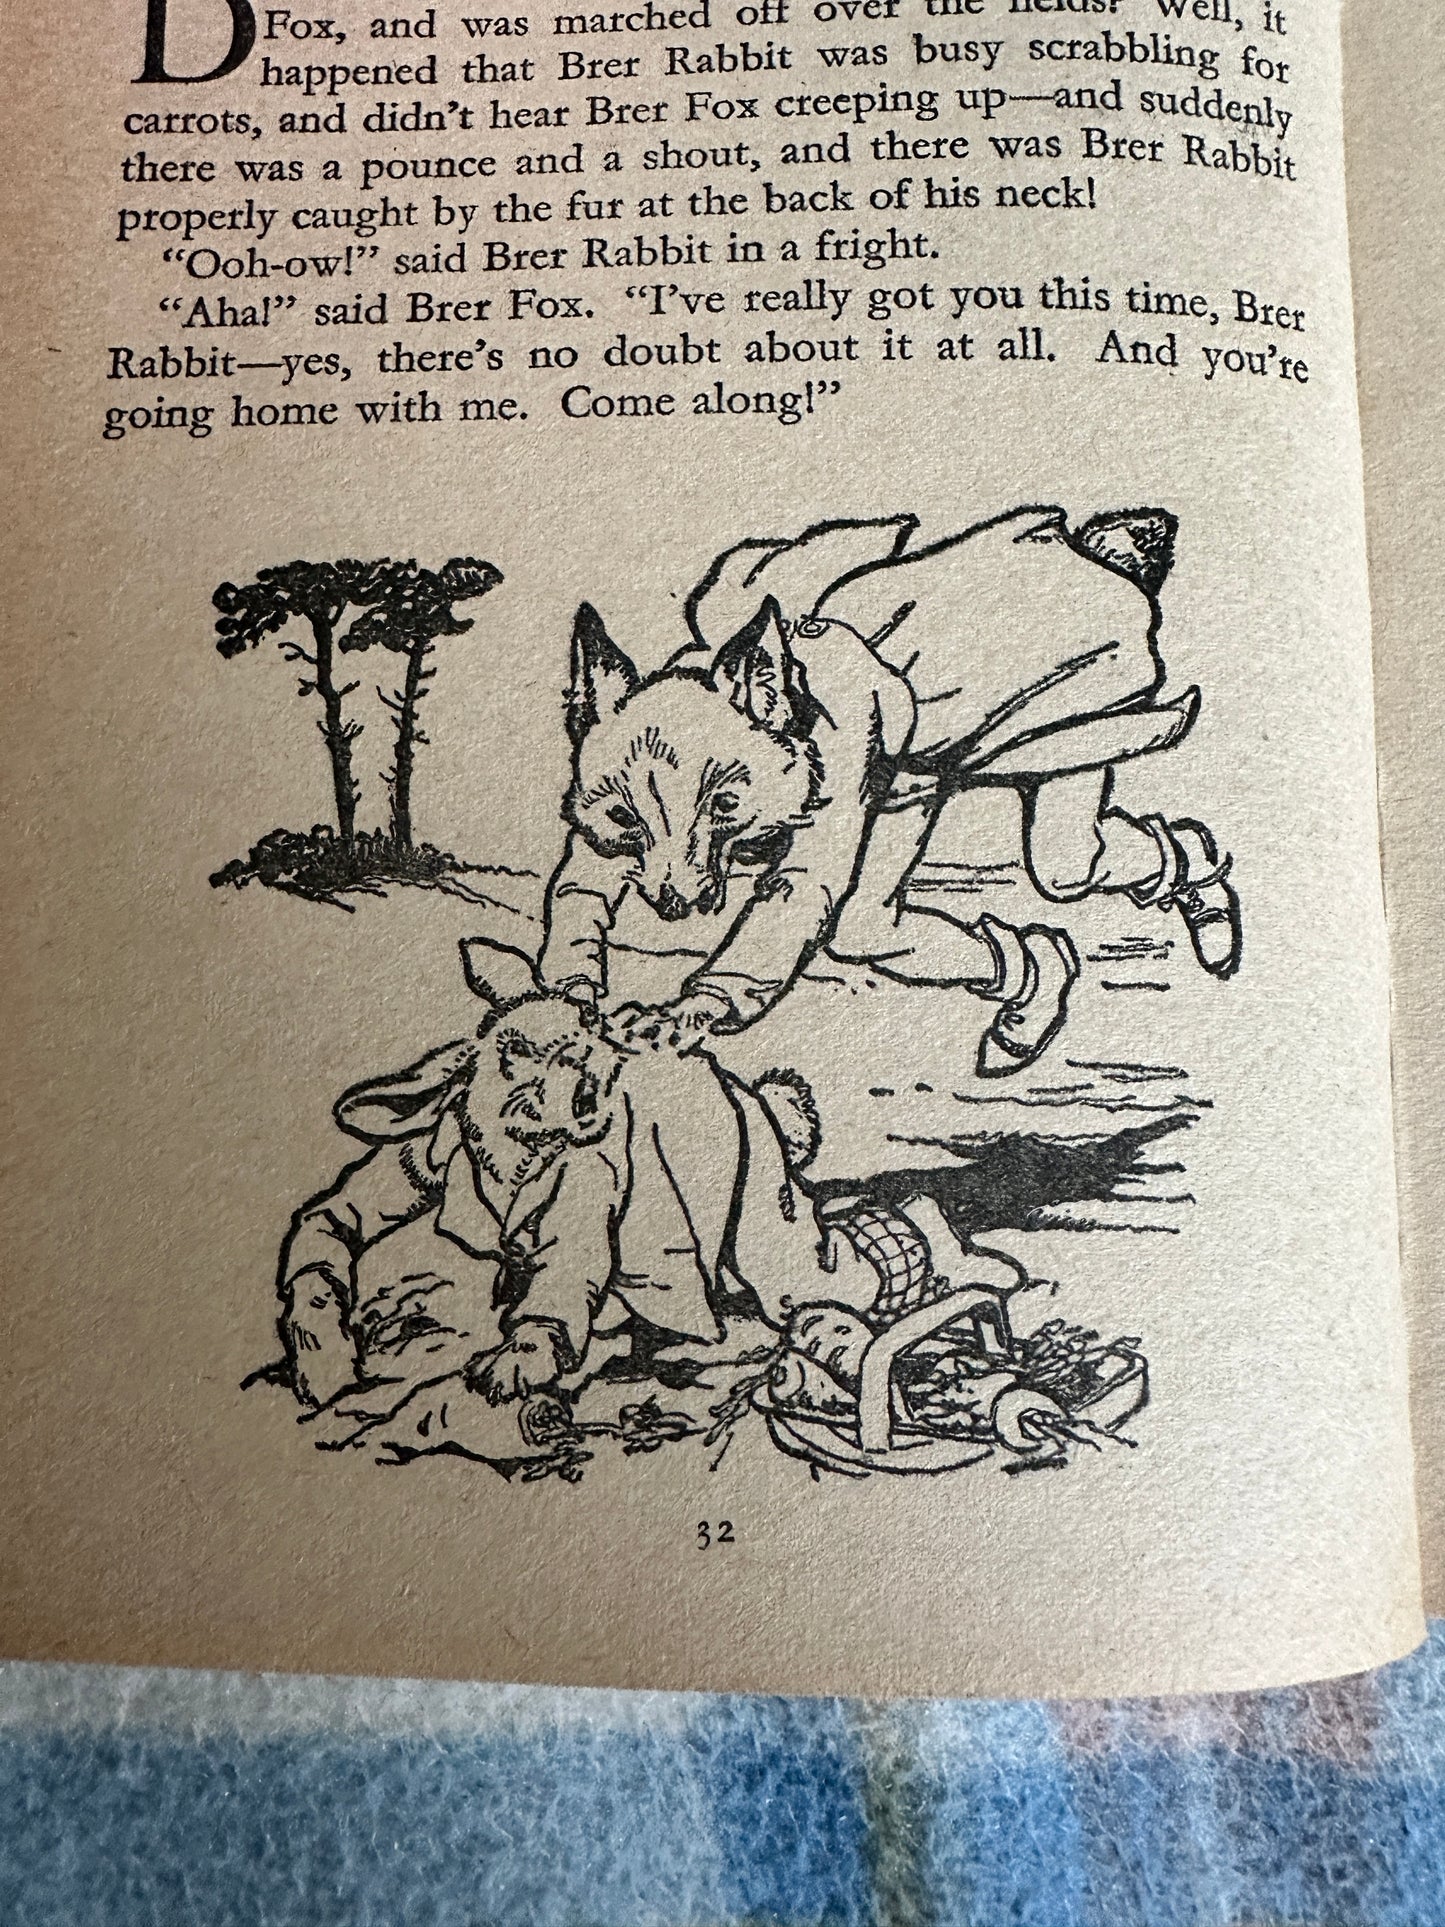 1965 Brer Rabbit’s A Rascal - Enid Blyton(Grace Lodge illustration)